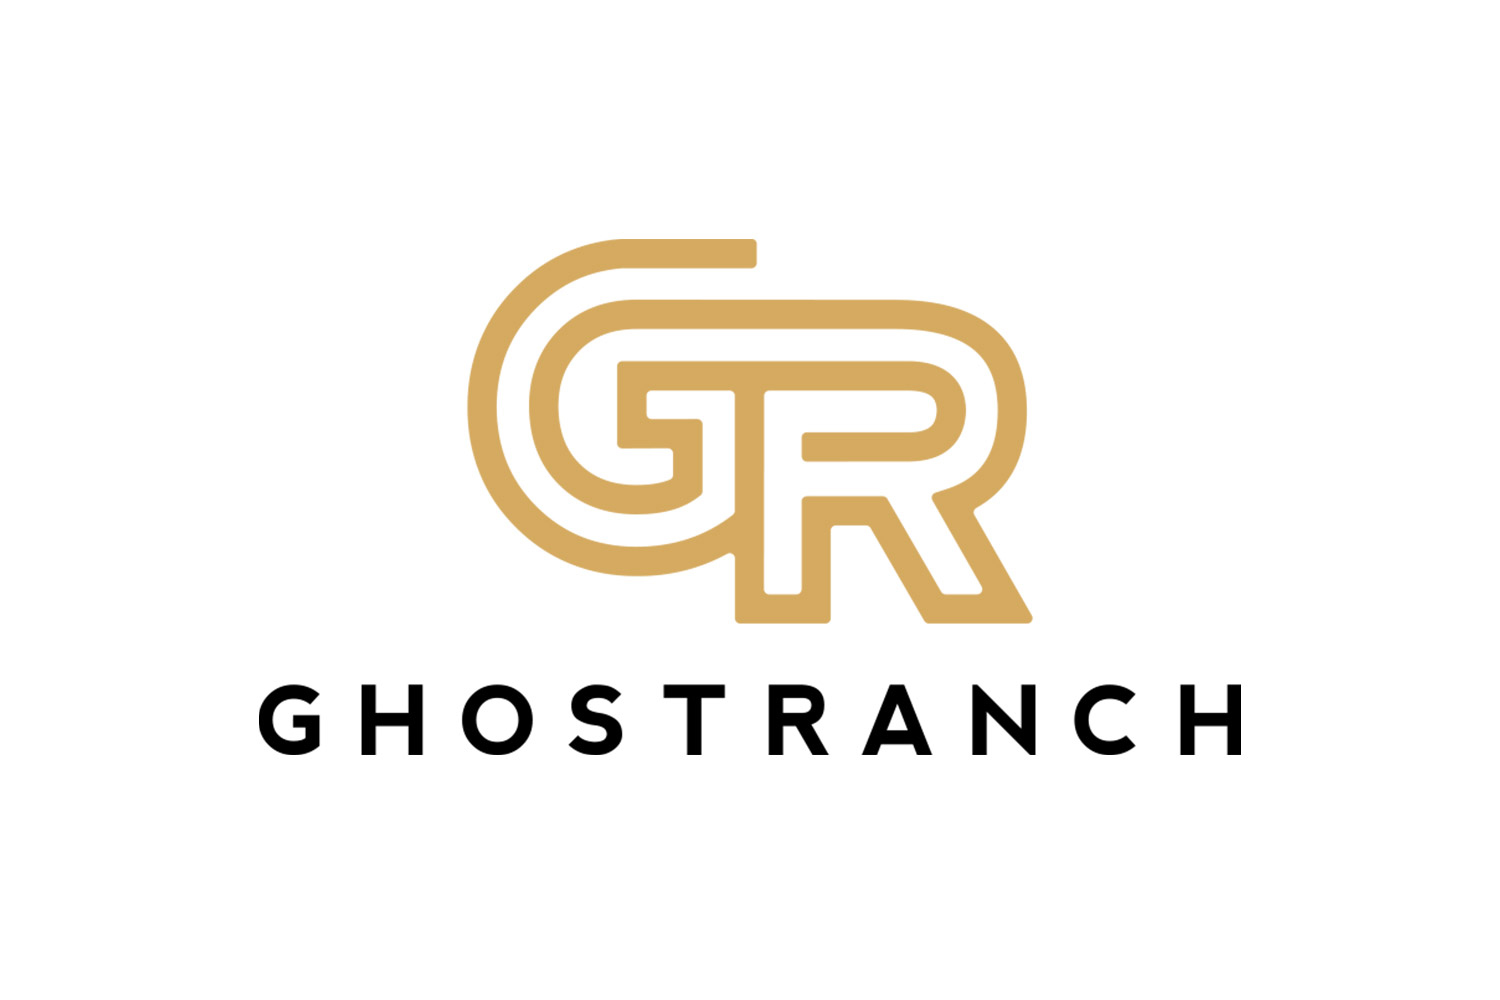 GhostRanch